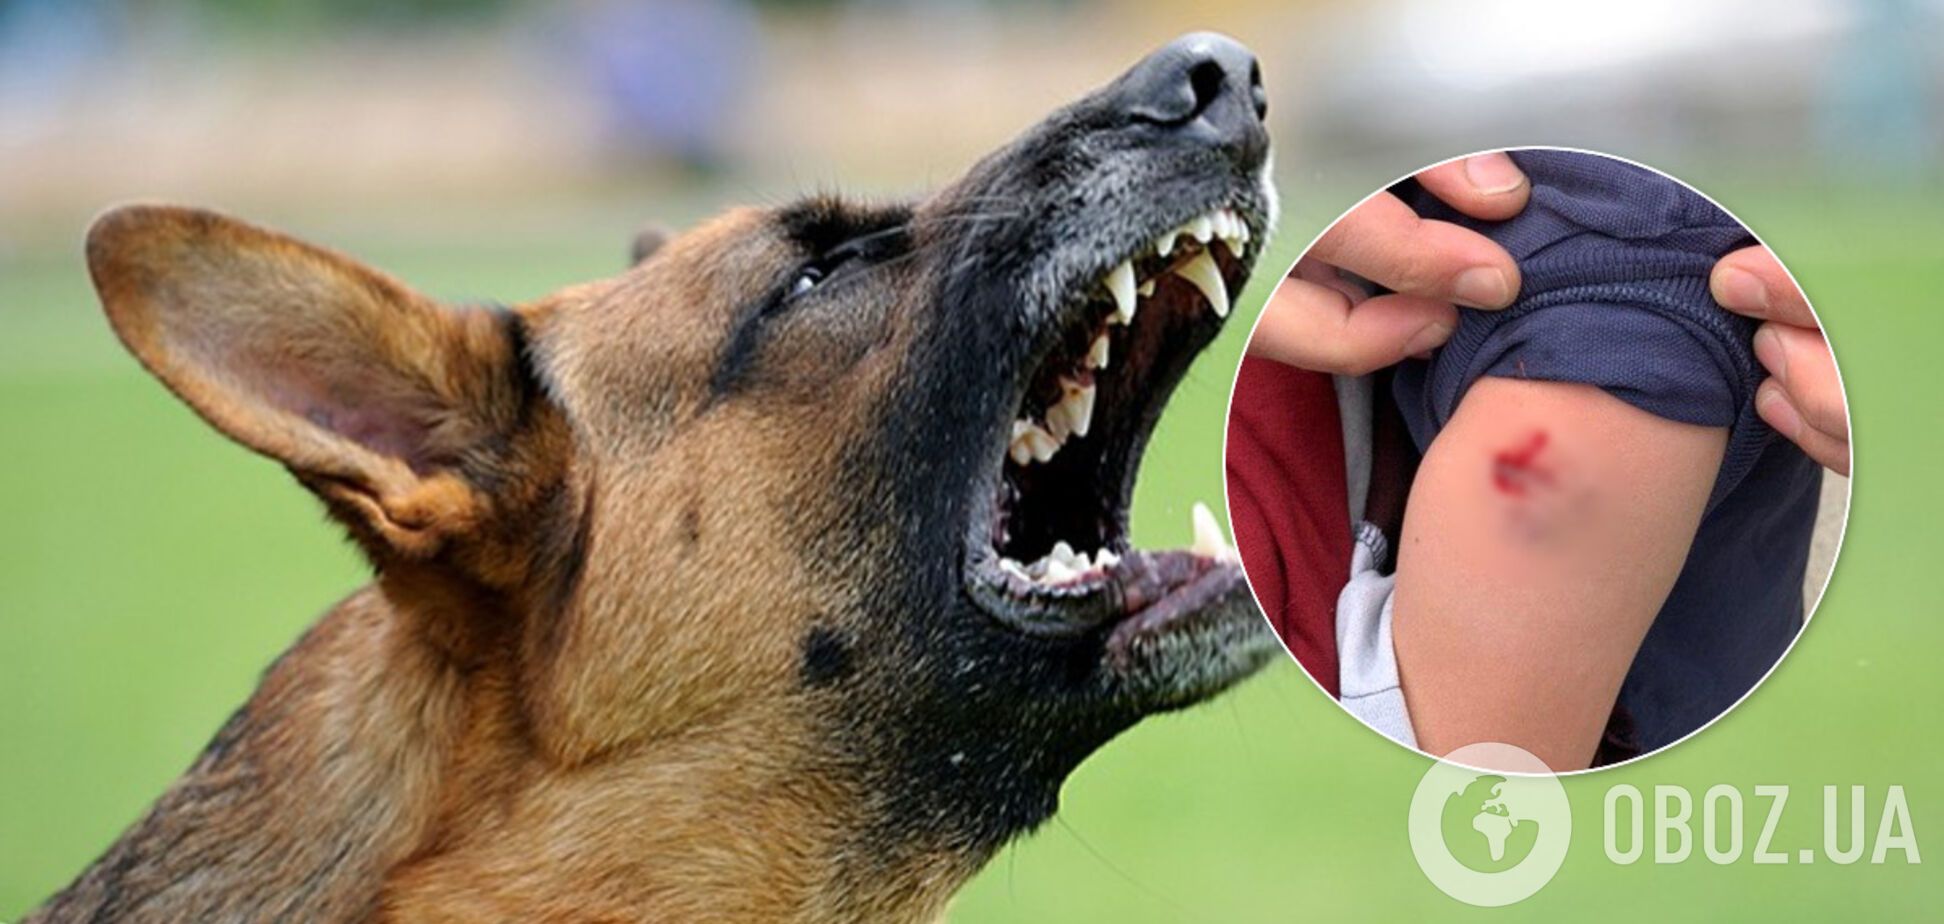 В Днепре агрессивные собаки нападают на горожан: хозяевам грозит серьезный штраф